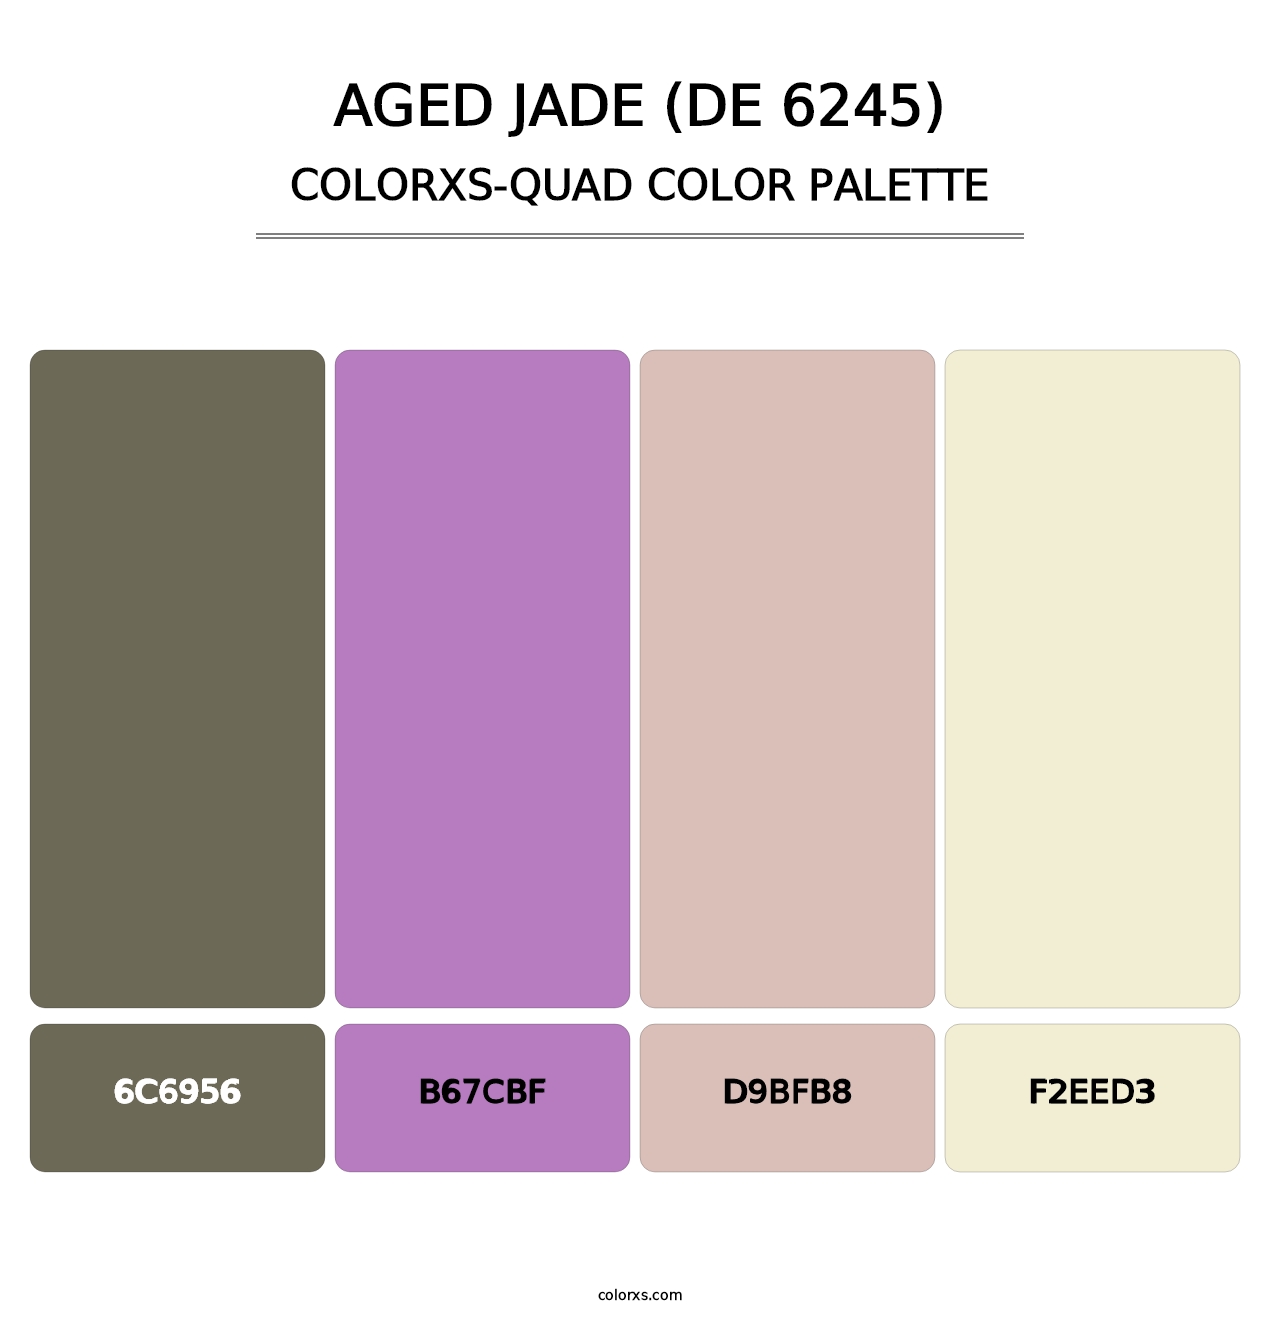 Aged Jade (DE 6245) - Colorxs Quad Palette